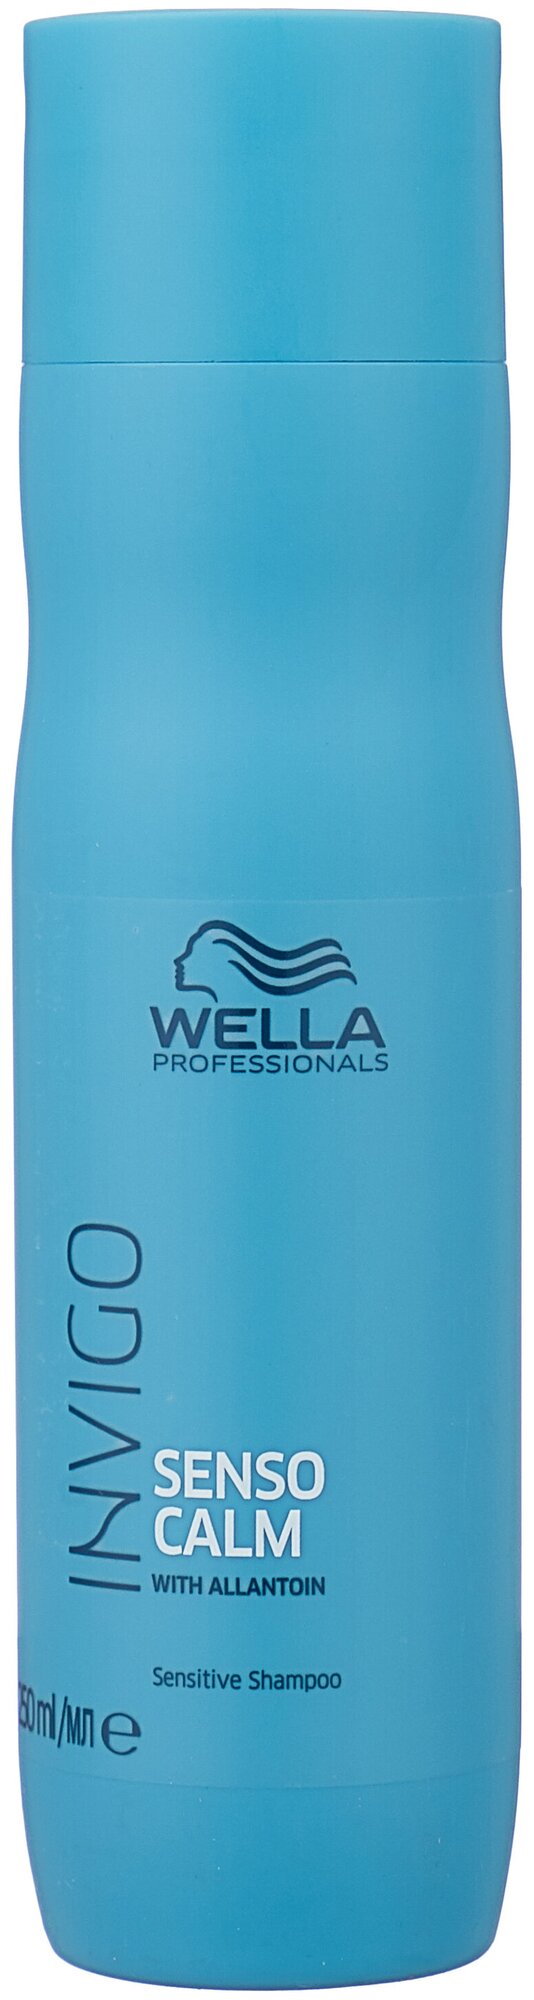 Wella Professionals Senso Calm шампунь для чувствительной кожи головы 1000 (Wella Professionals, ) - фото №1